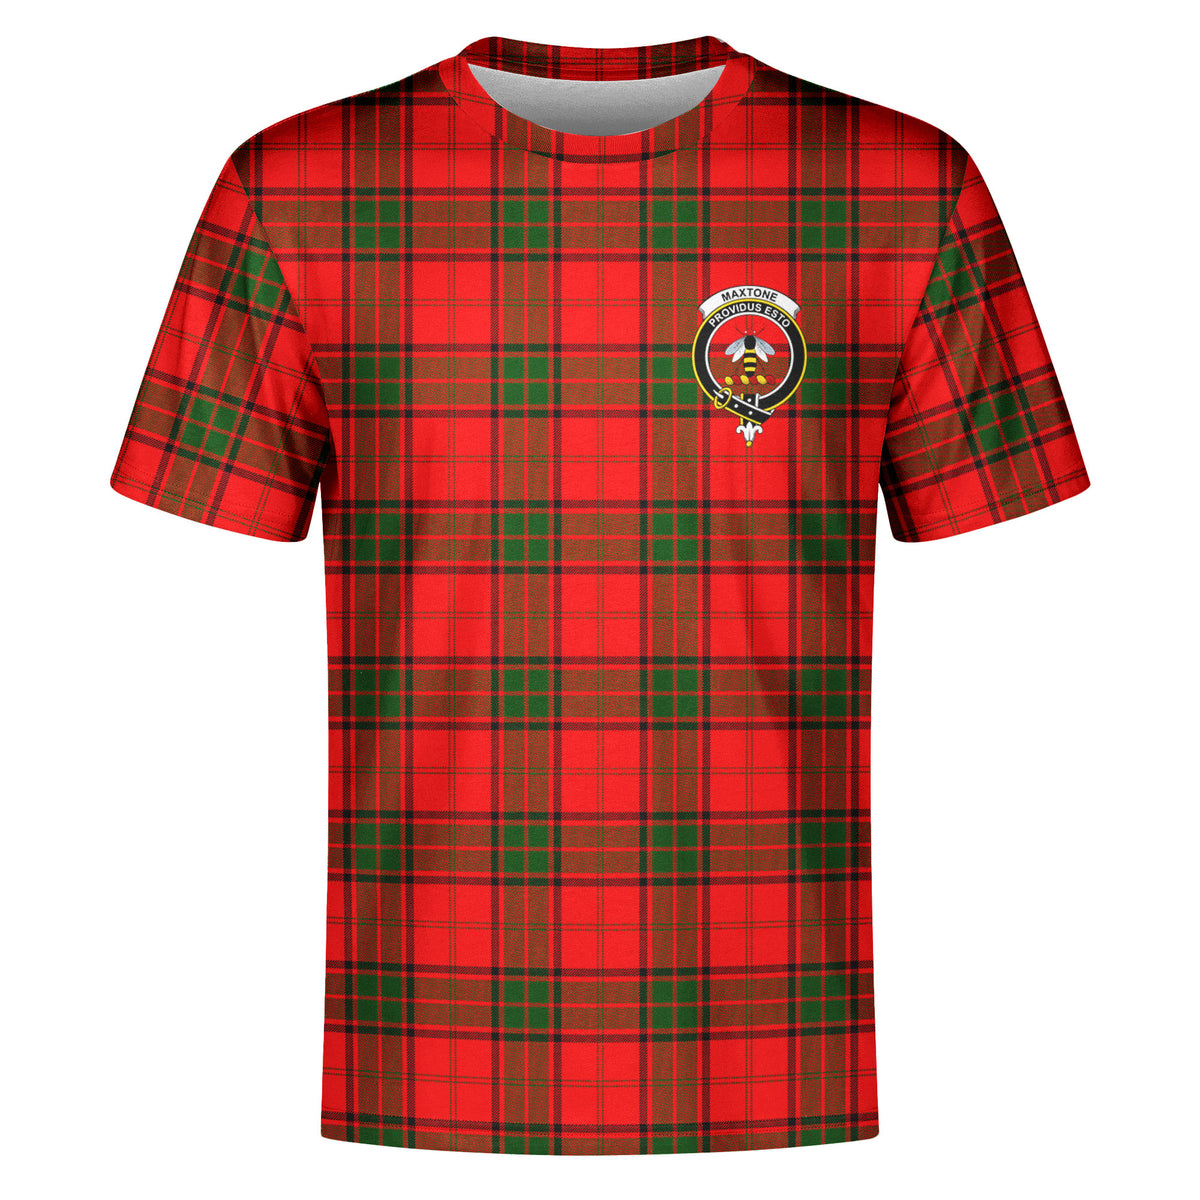 Maxtone Tartan Crest T-shirt